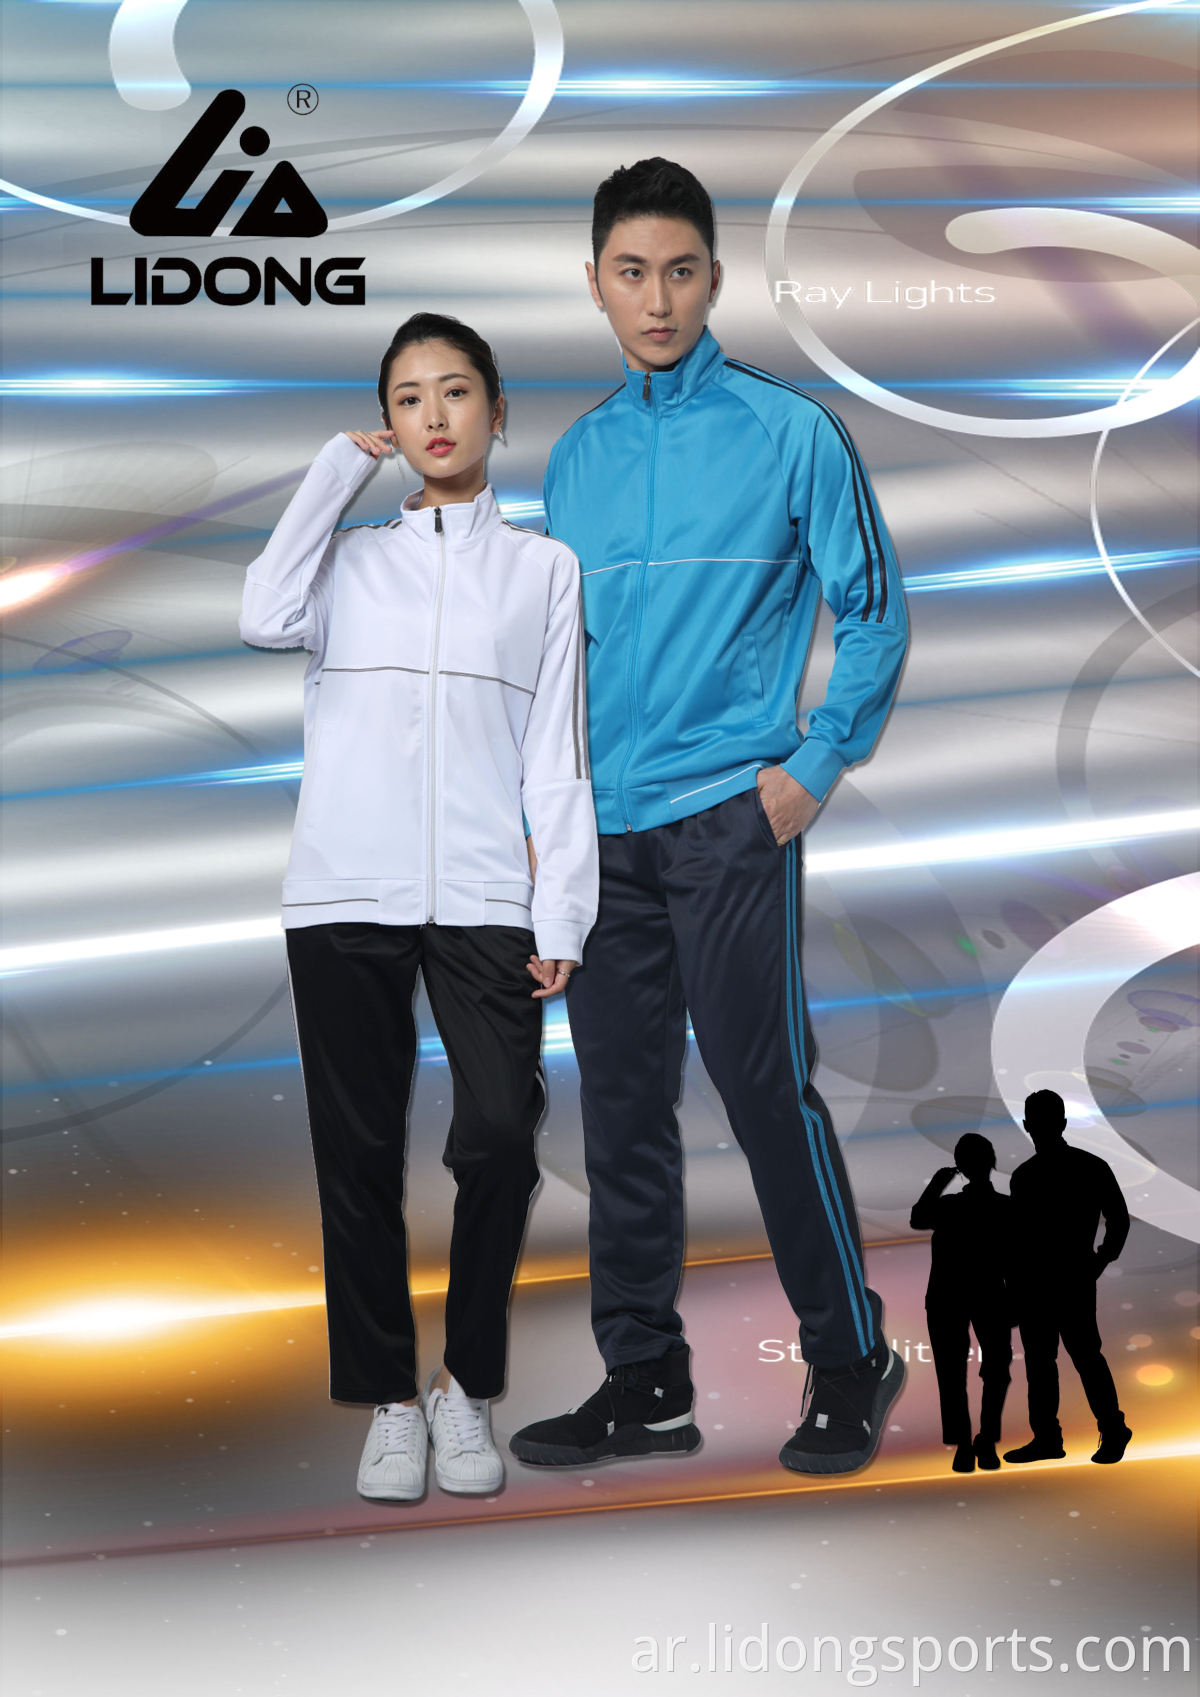 Lidong Wholesale Professional Up Suit Suit Suctionation Device TrackSuit Design